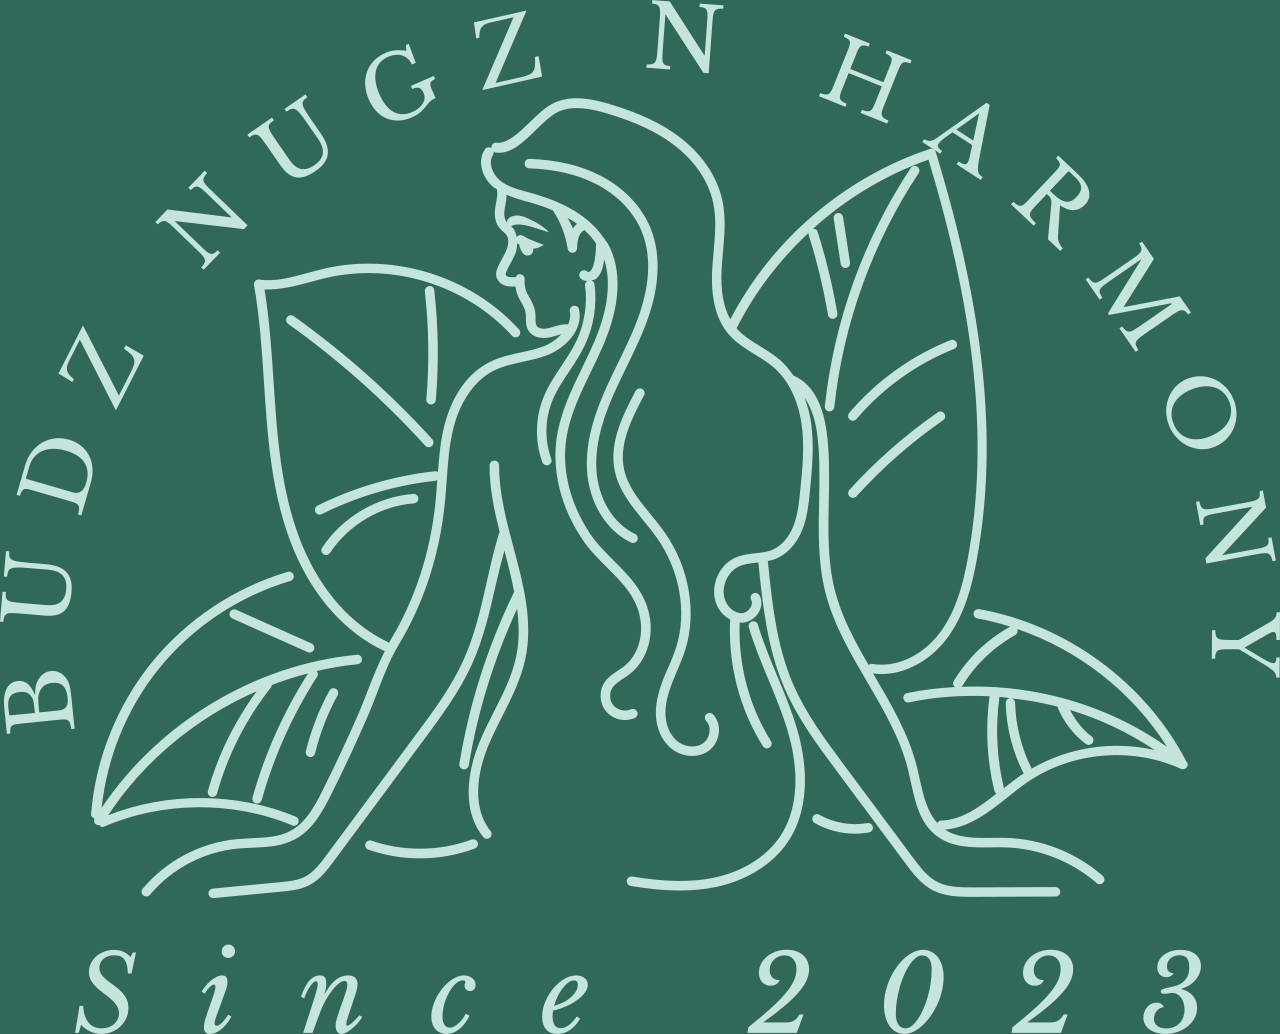 BUDZ NUGZ N HARMONY 's logo